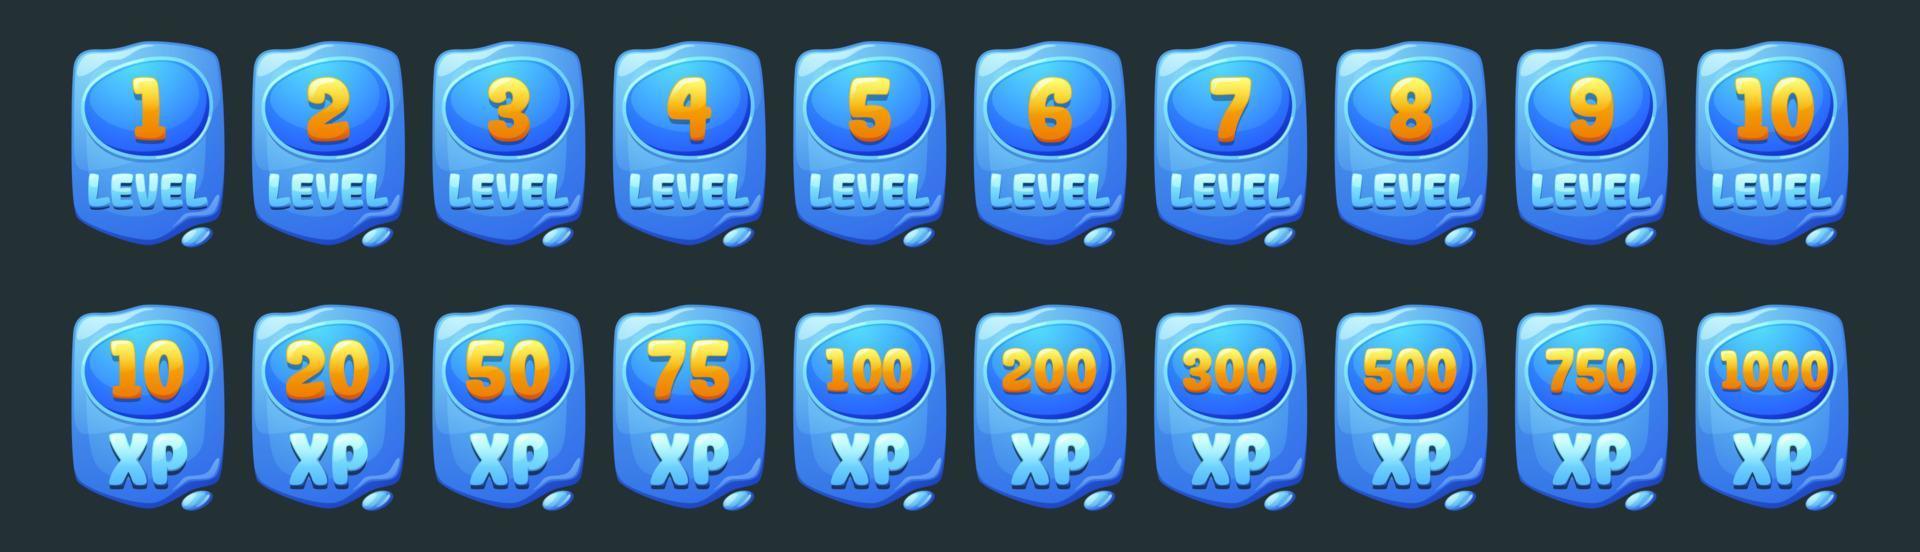 conjunto de ícones de interface do usuário de nível de jogo de água, banners azuis vetor